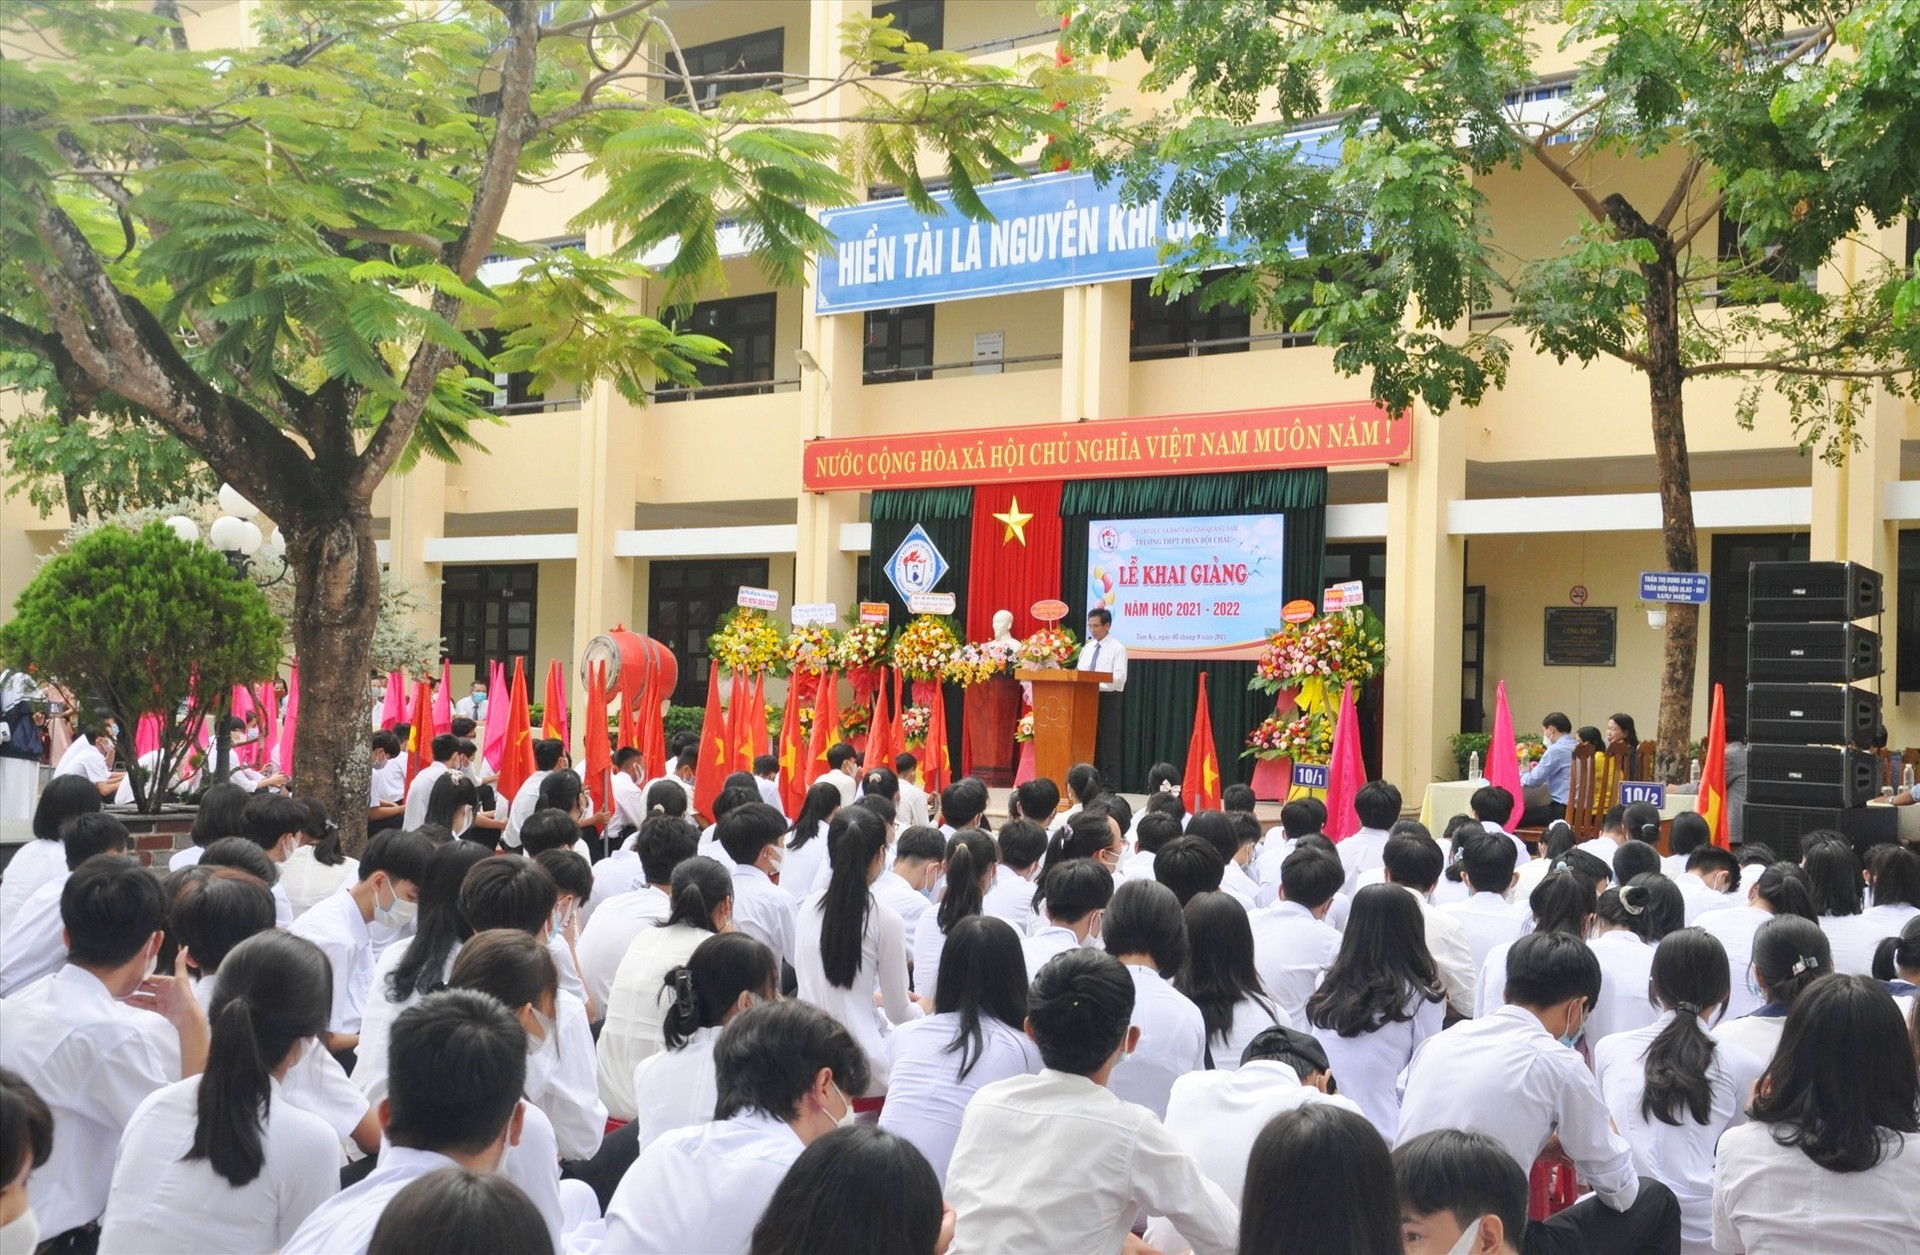 Lễ khai giảng gọn nhẹ của Trường THPT Phan Bội Châu (Tam Kỳ). Ảnh: X.P